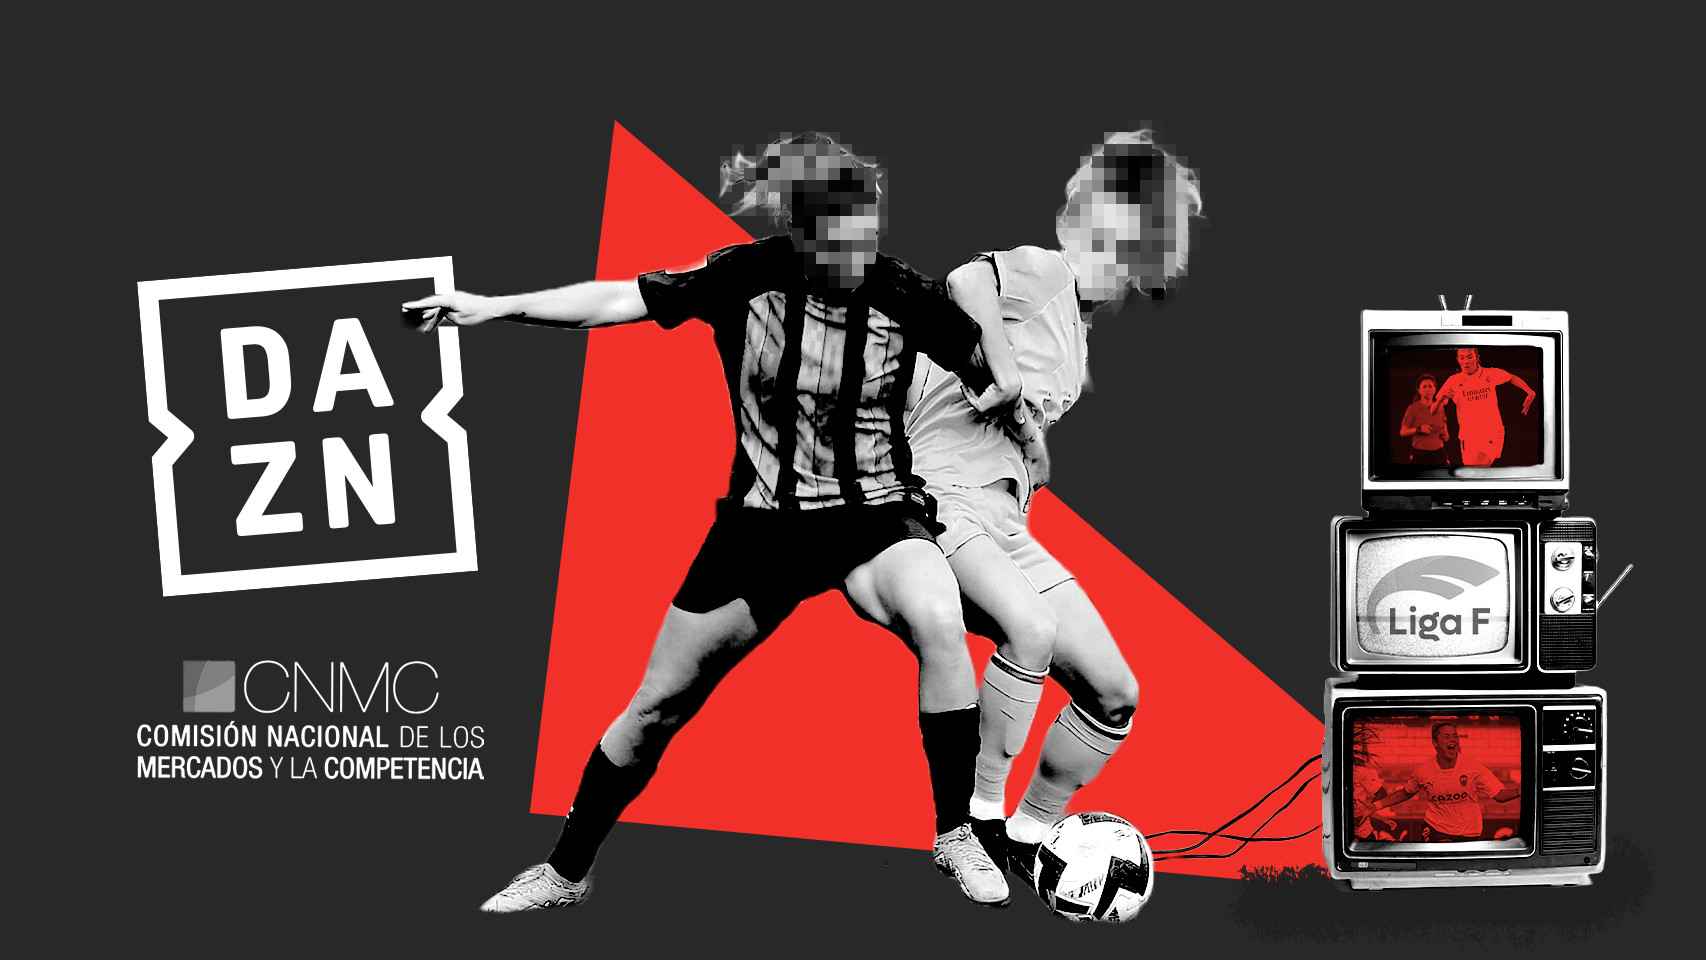 La Liga Femenina de fútbol adjudicó ilegalmente sus derechos de TV a Dazn y Mediapro, según la CNMC